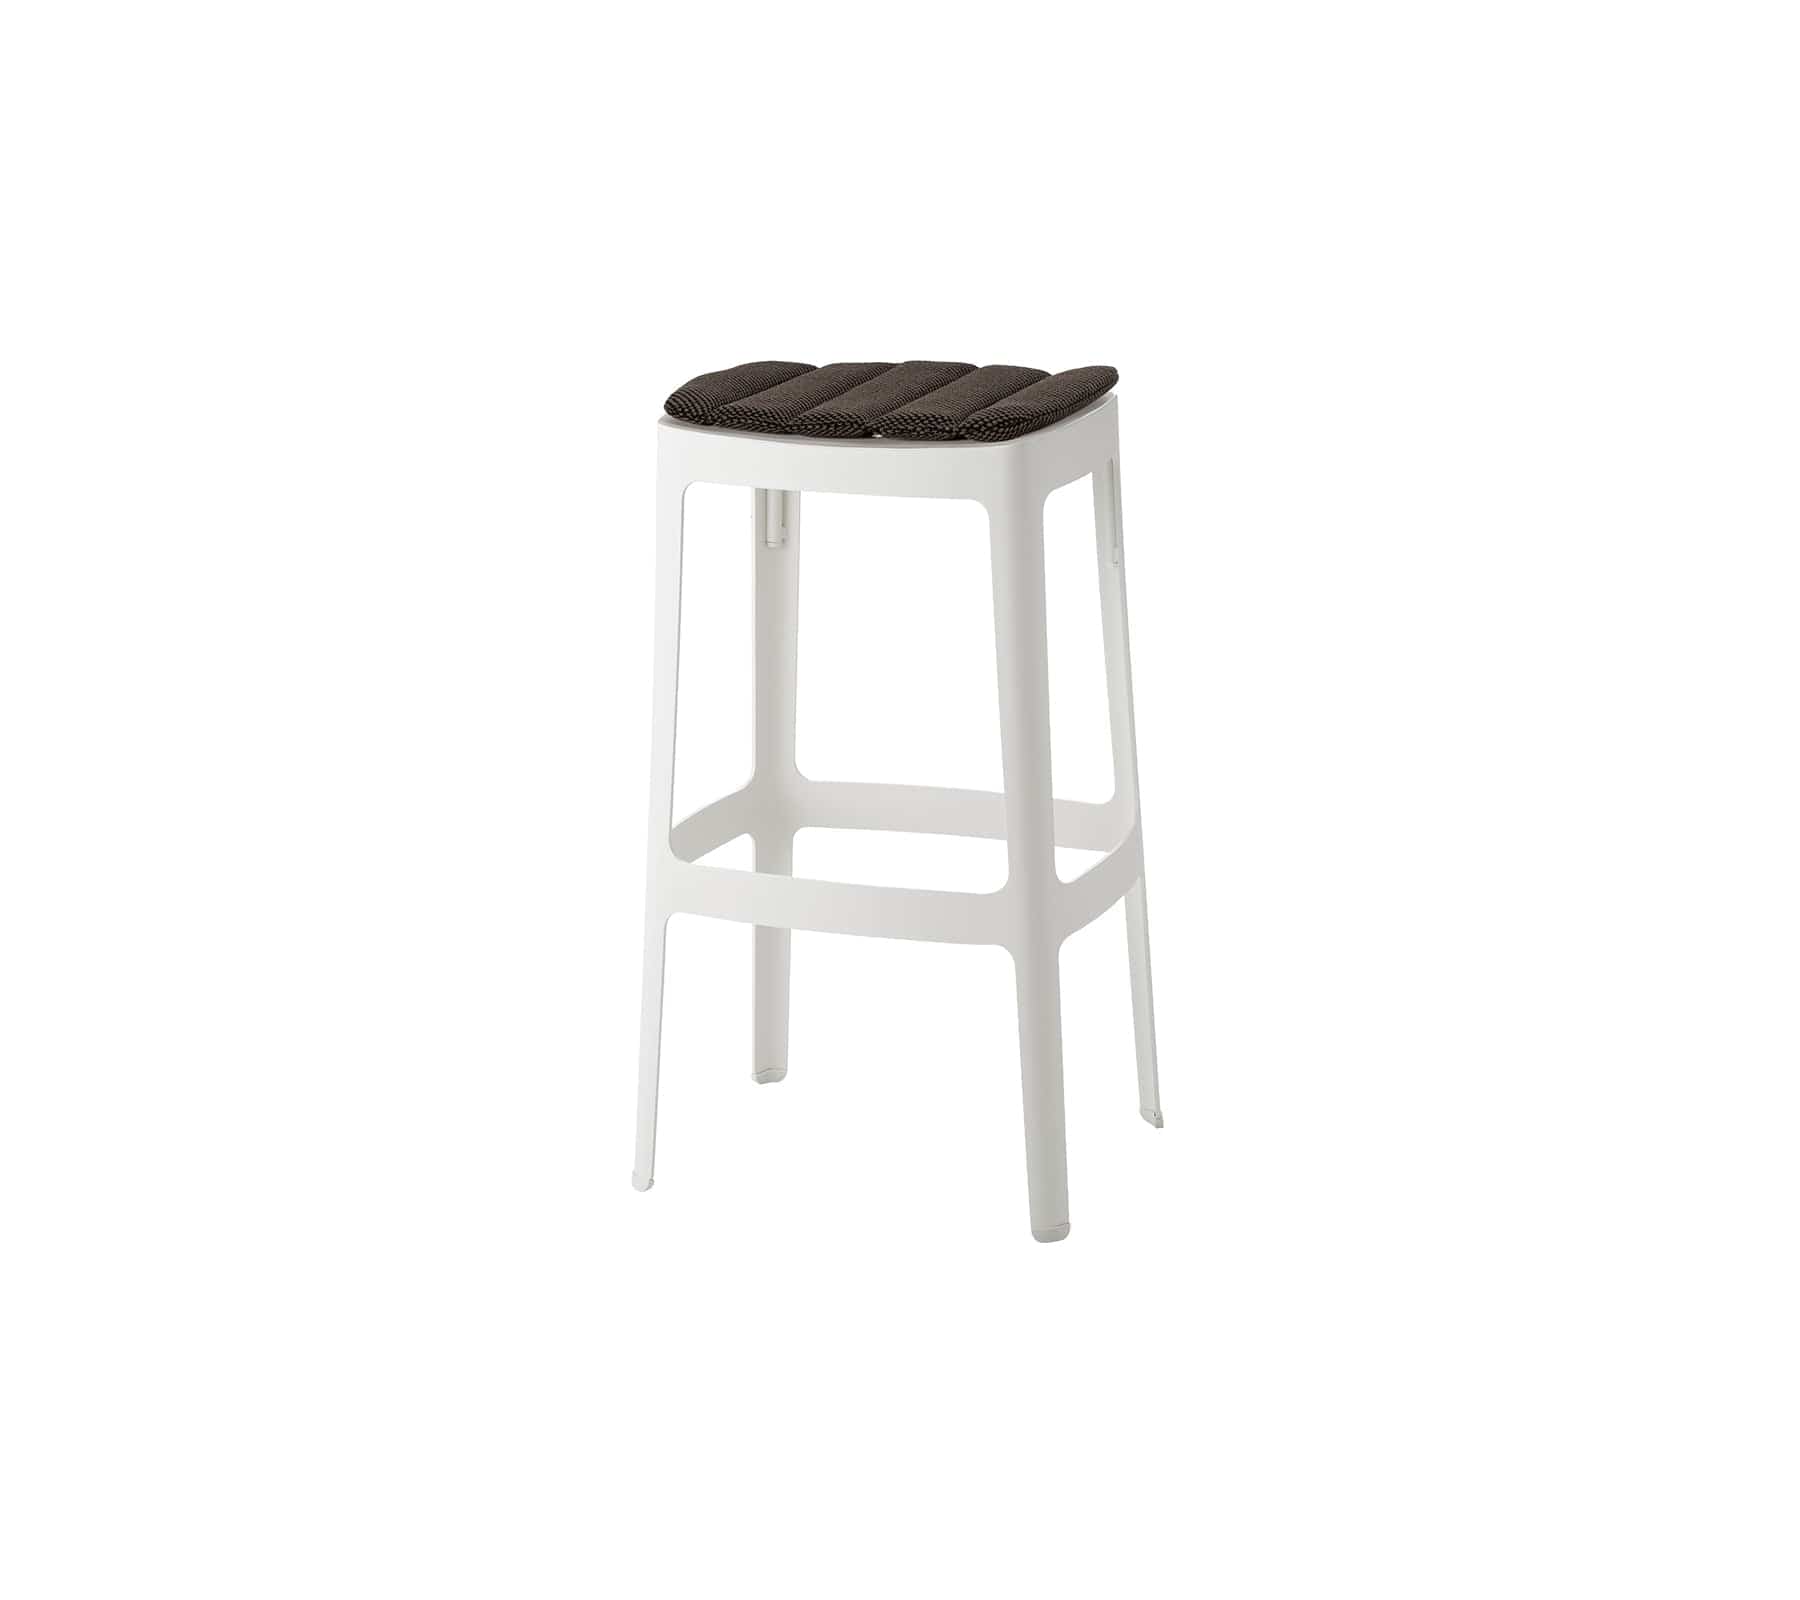 Cane-Line Denmark White - aluminium / Dark grey - Cane-line Focus Cut bar chair, high, stackable (11402)